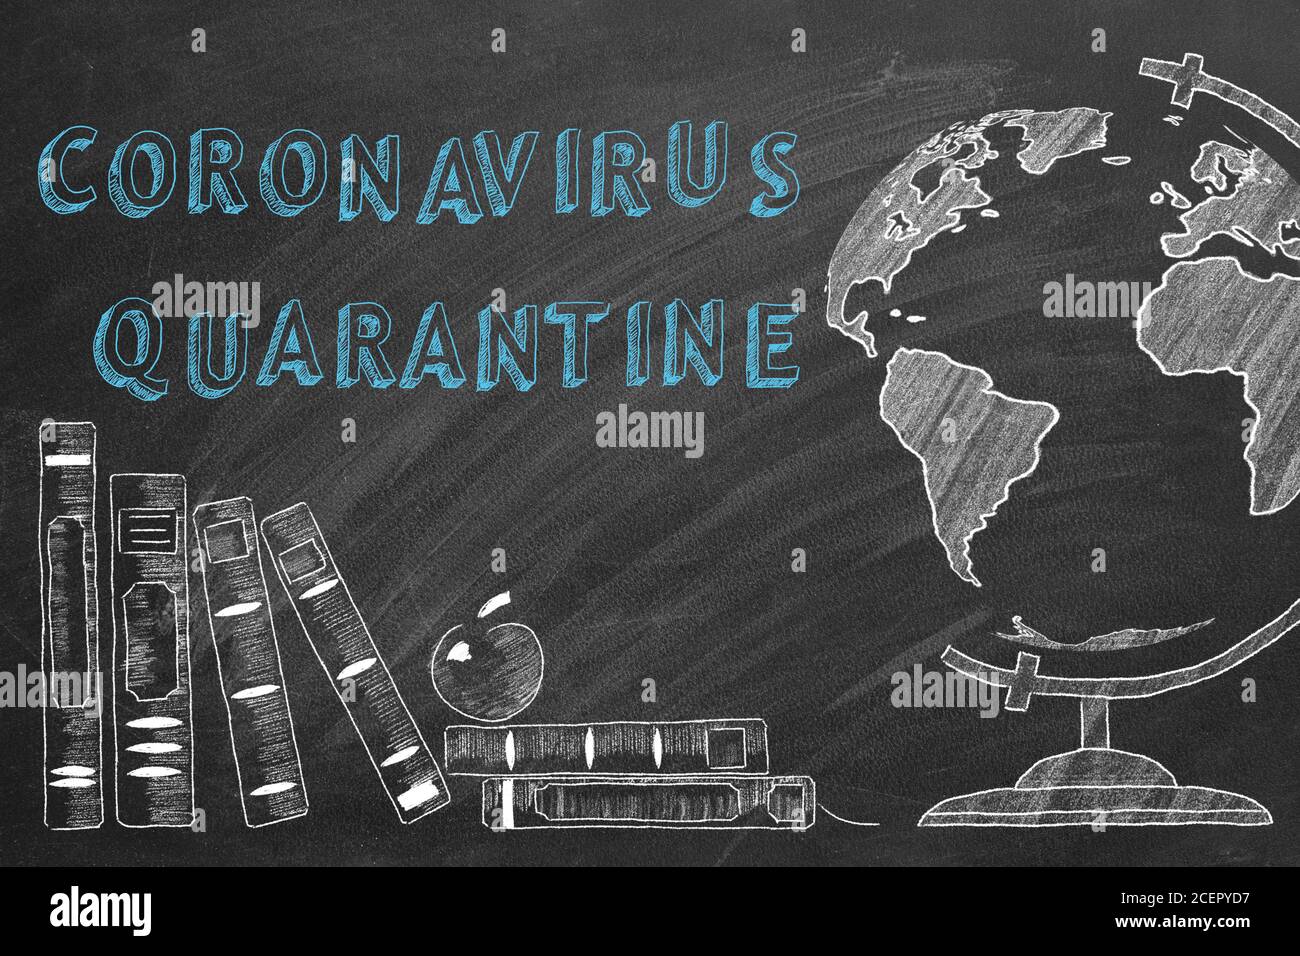 La quarantena dei coronavirus, il globo rotante e i libri scolastici sono disegnati con gesso su una lavagna. Foto Stock